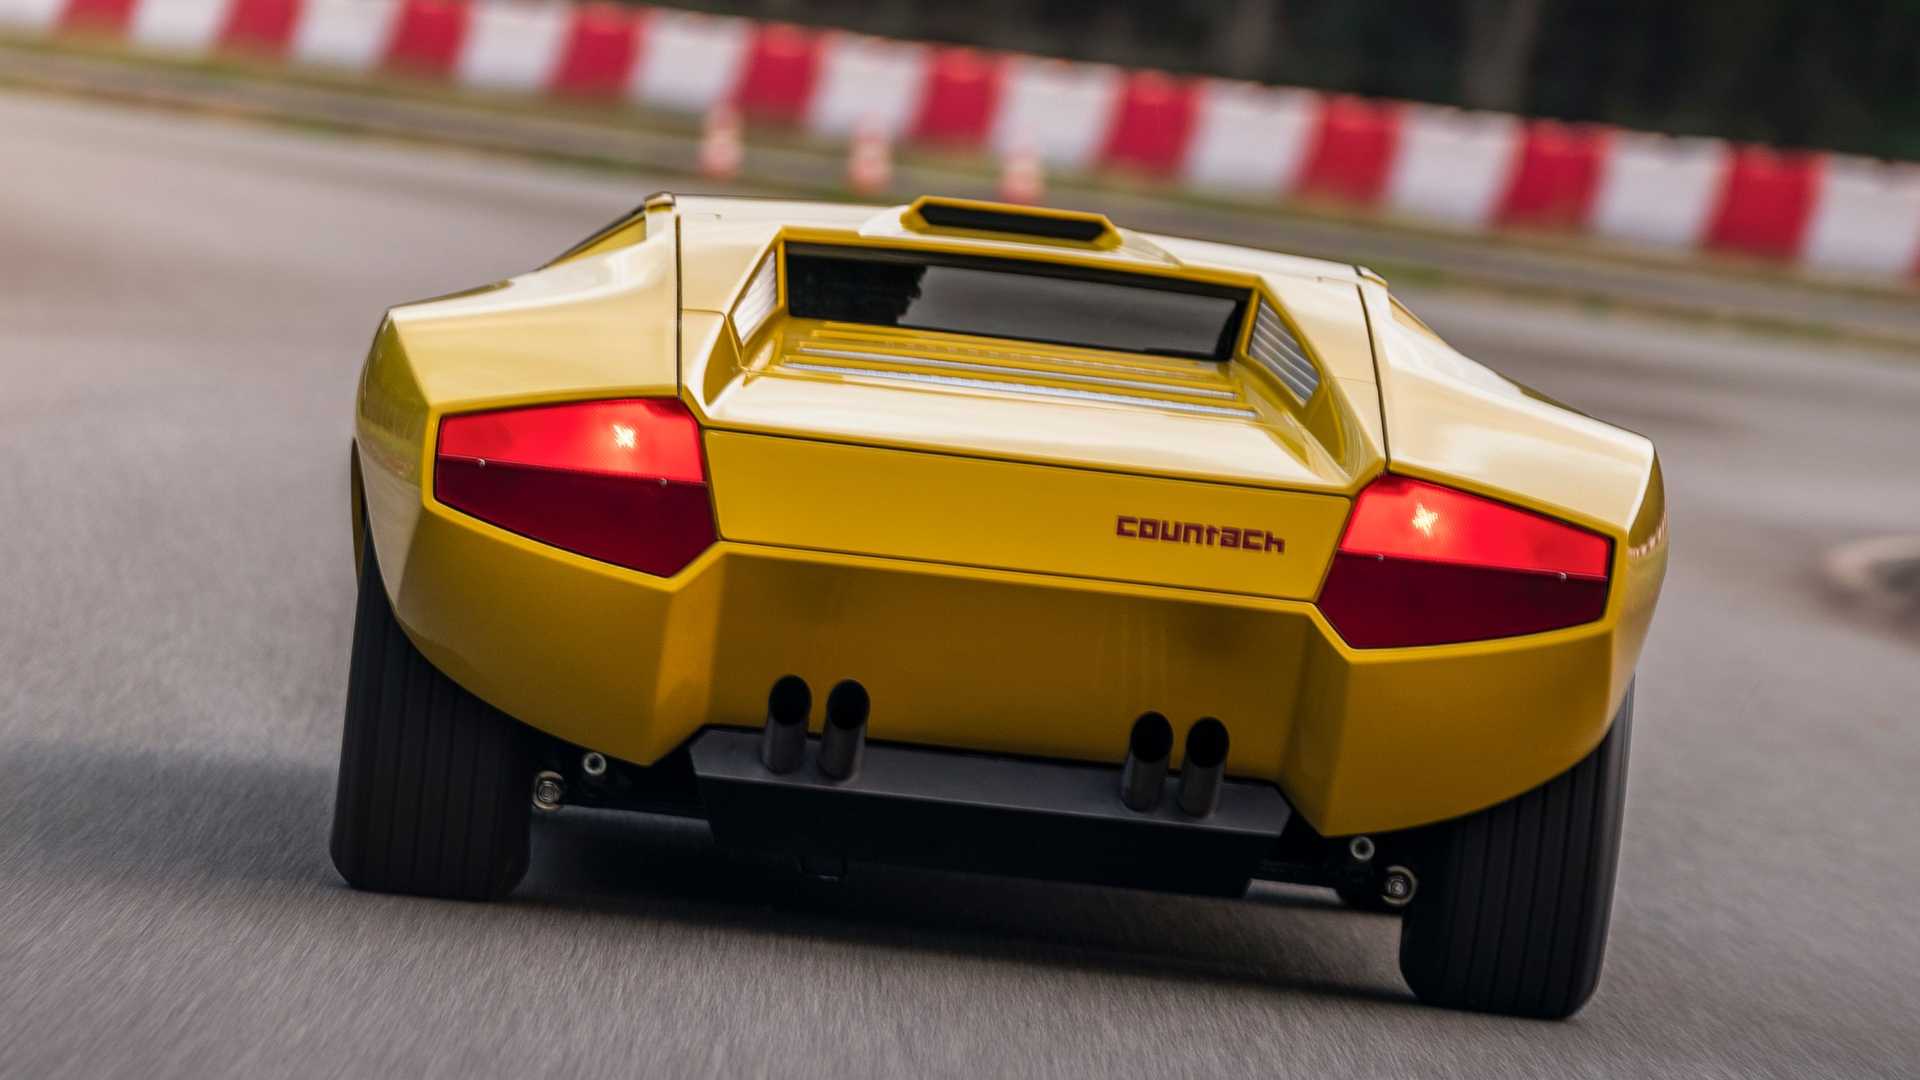 Mặc dù đã ra mắt Lamborghini Countach mới nhưng hãng siêu xe Ý vẫn phục chế  1 phiên bản cũ độc nhất vô nhị